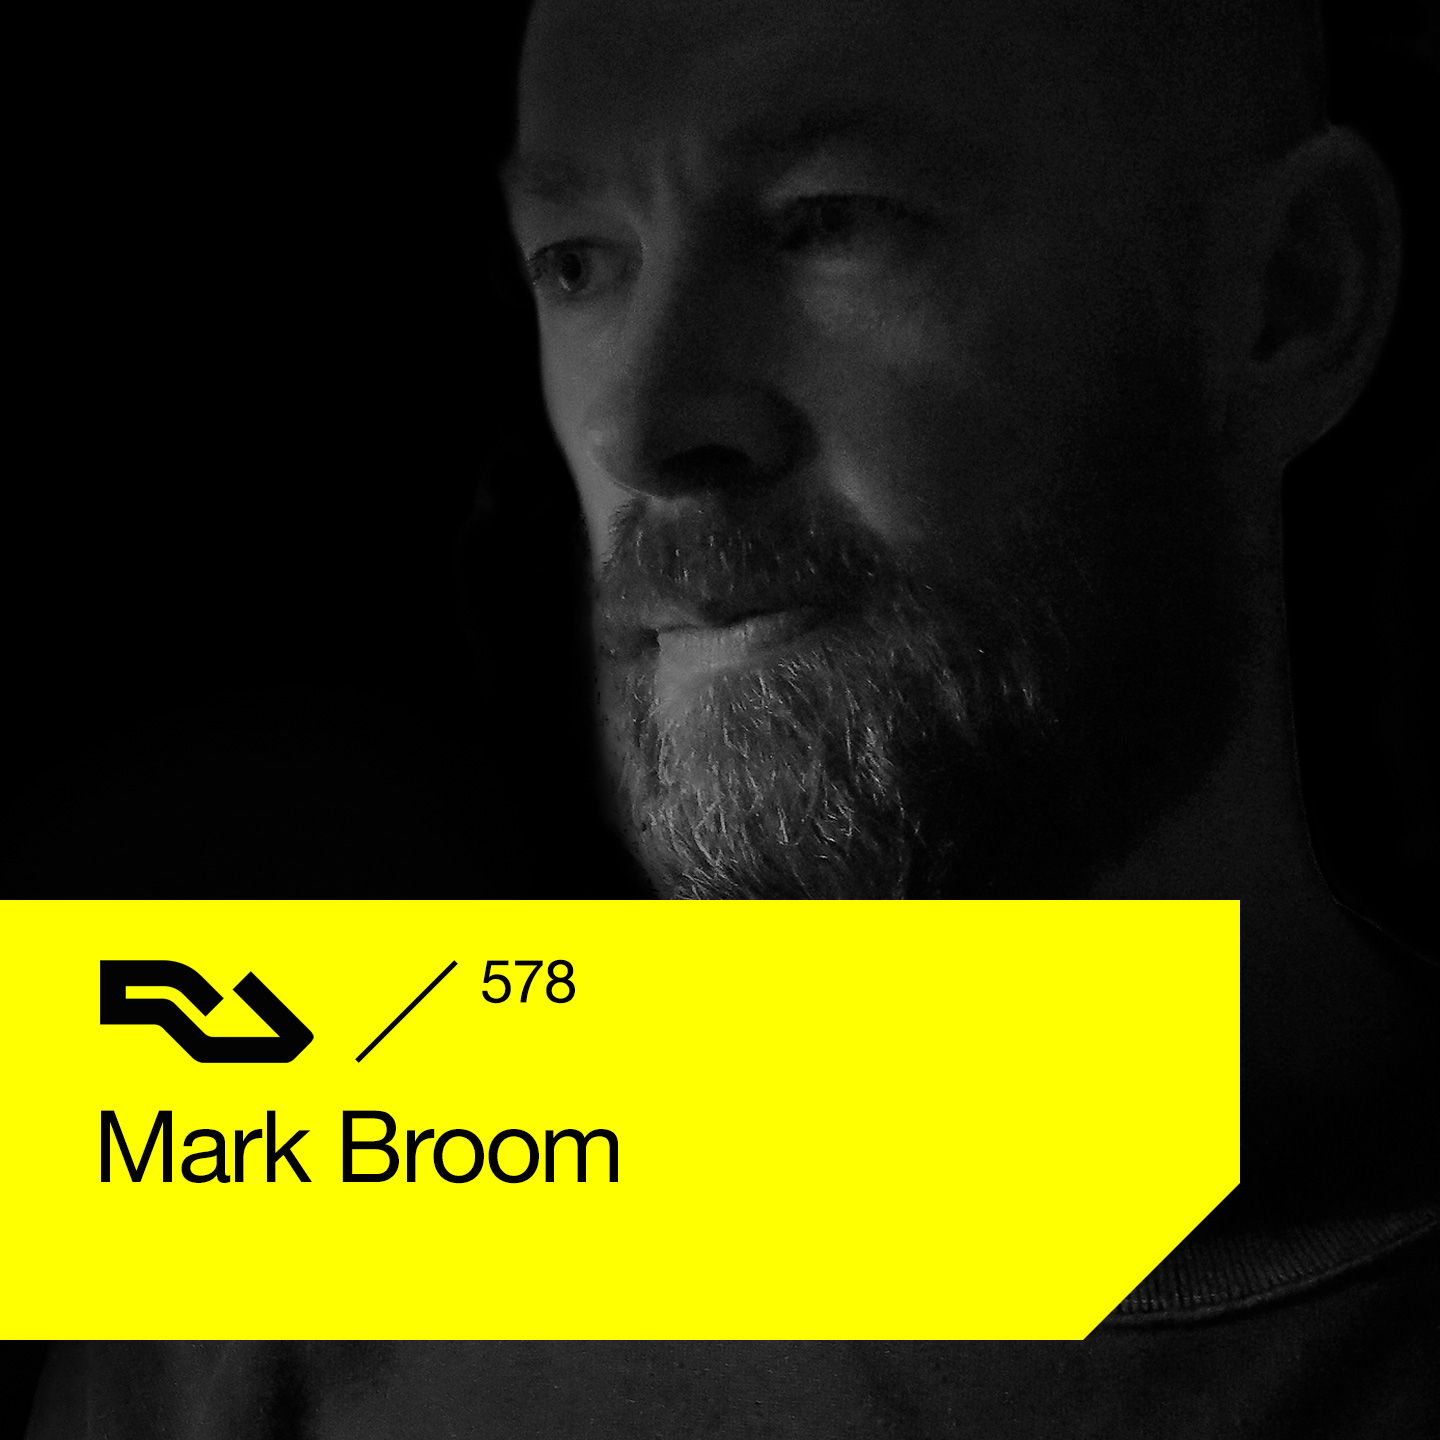 Ra Podcast Ra 578 Mark Broom